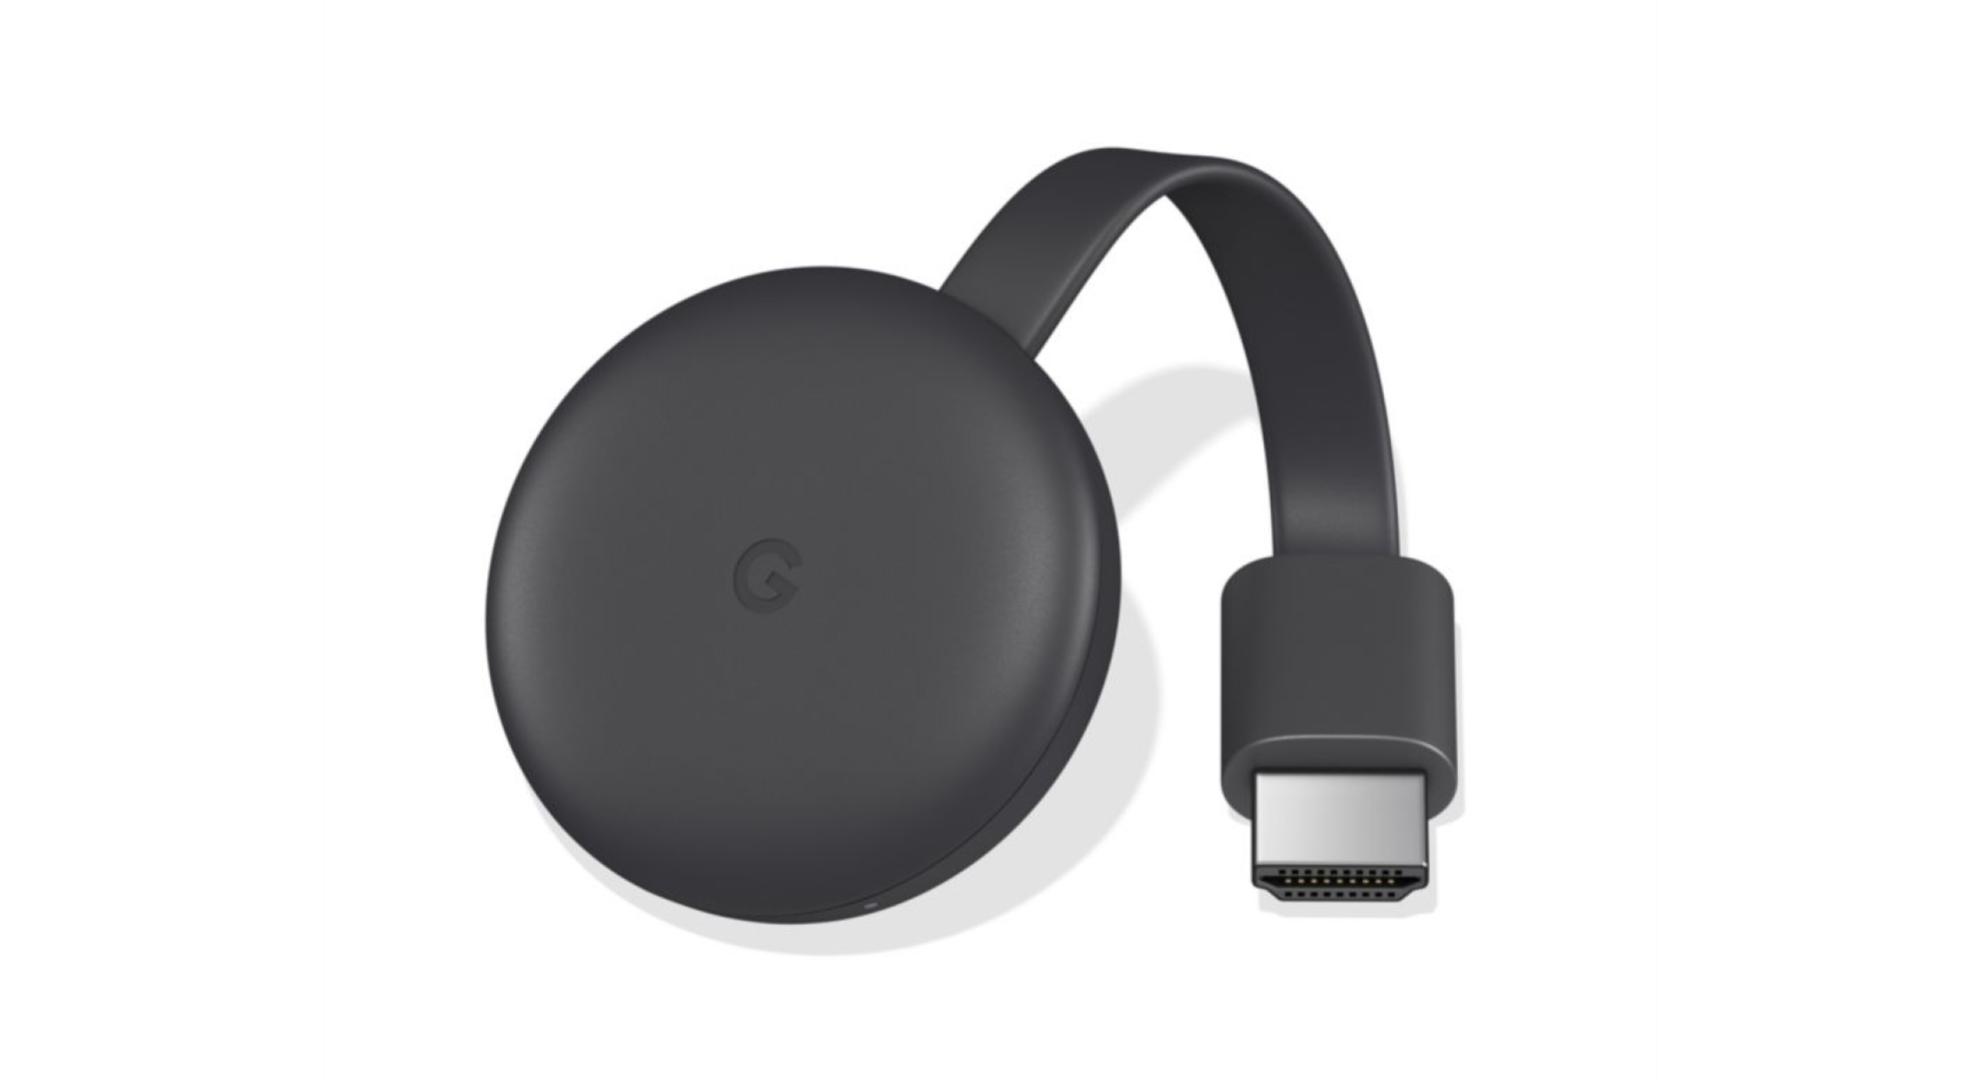 Rarement en promotion, le Google Chromecast 3 baisse son prix à 34 euros